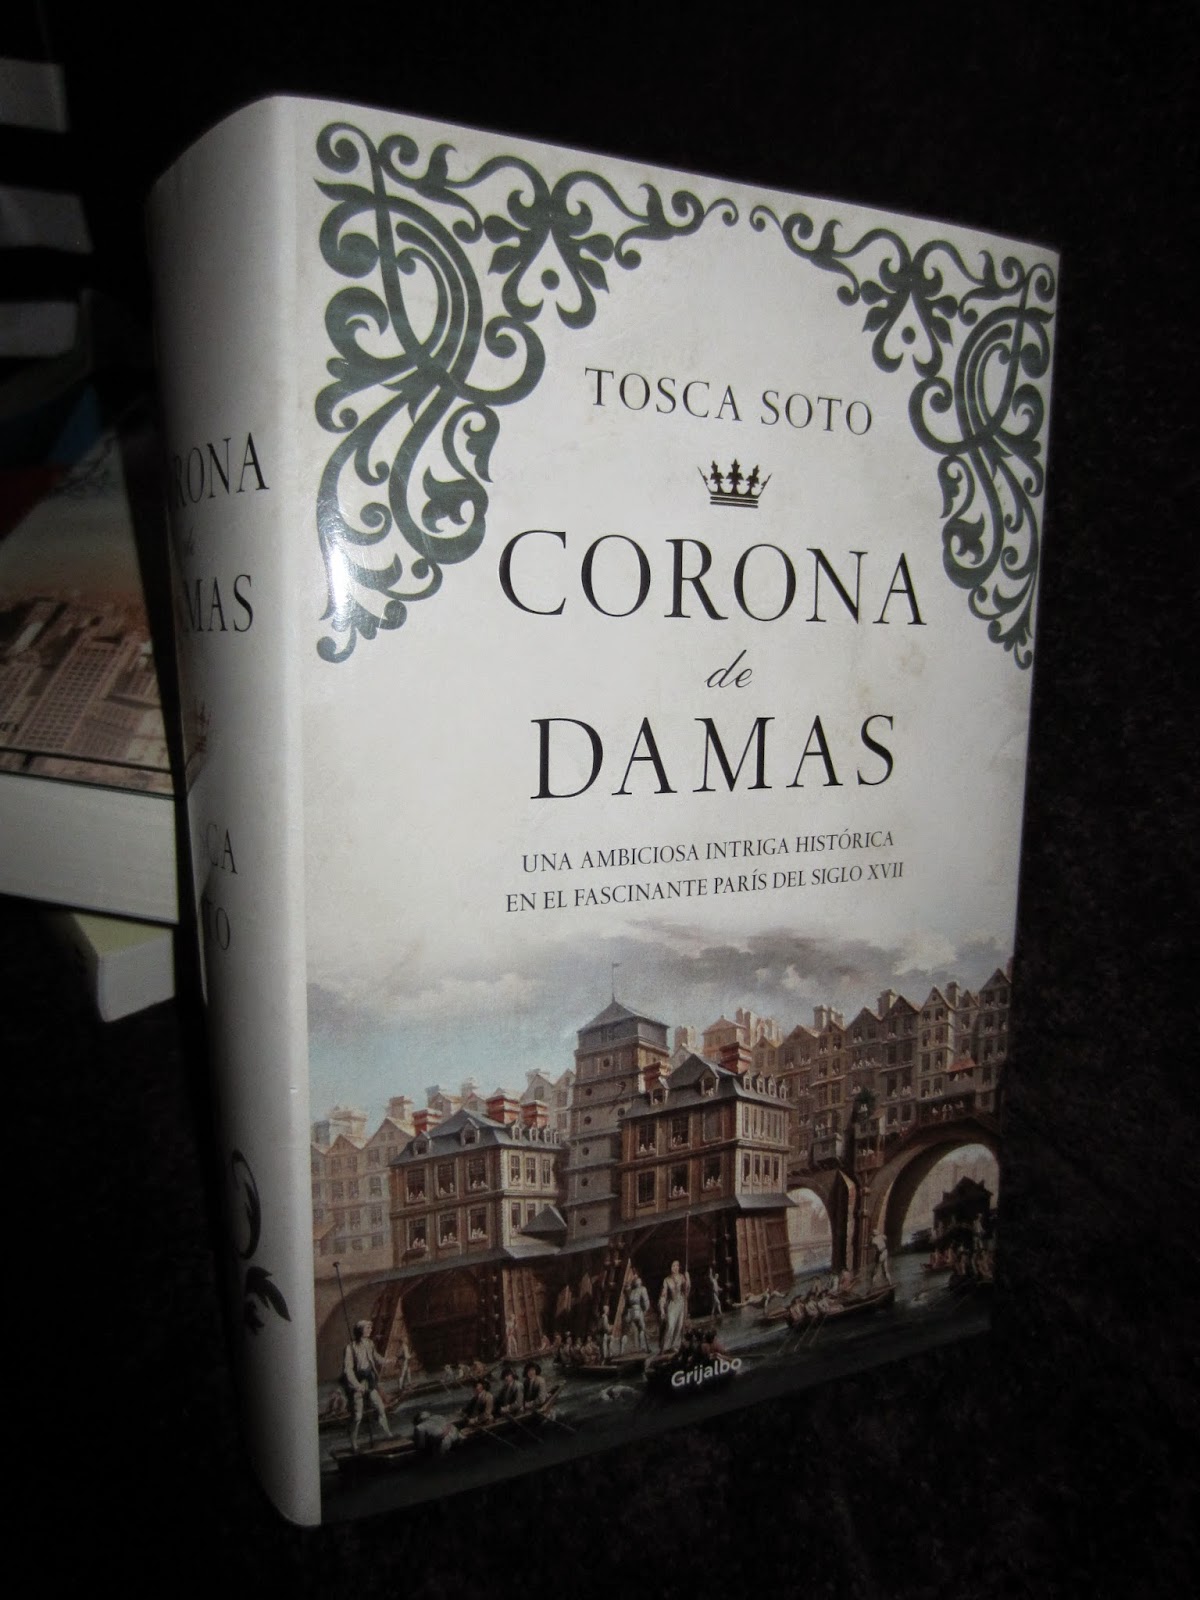  Libro "Corona de Damas" Tosca Soto